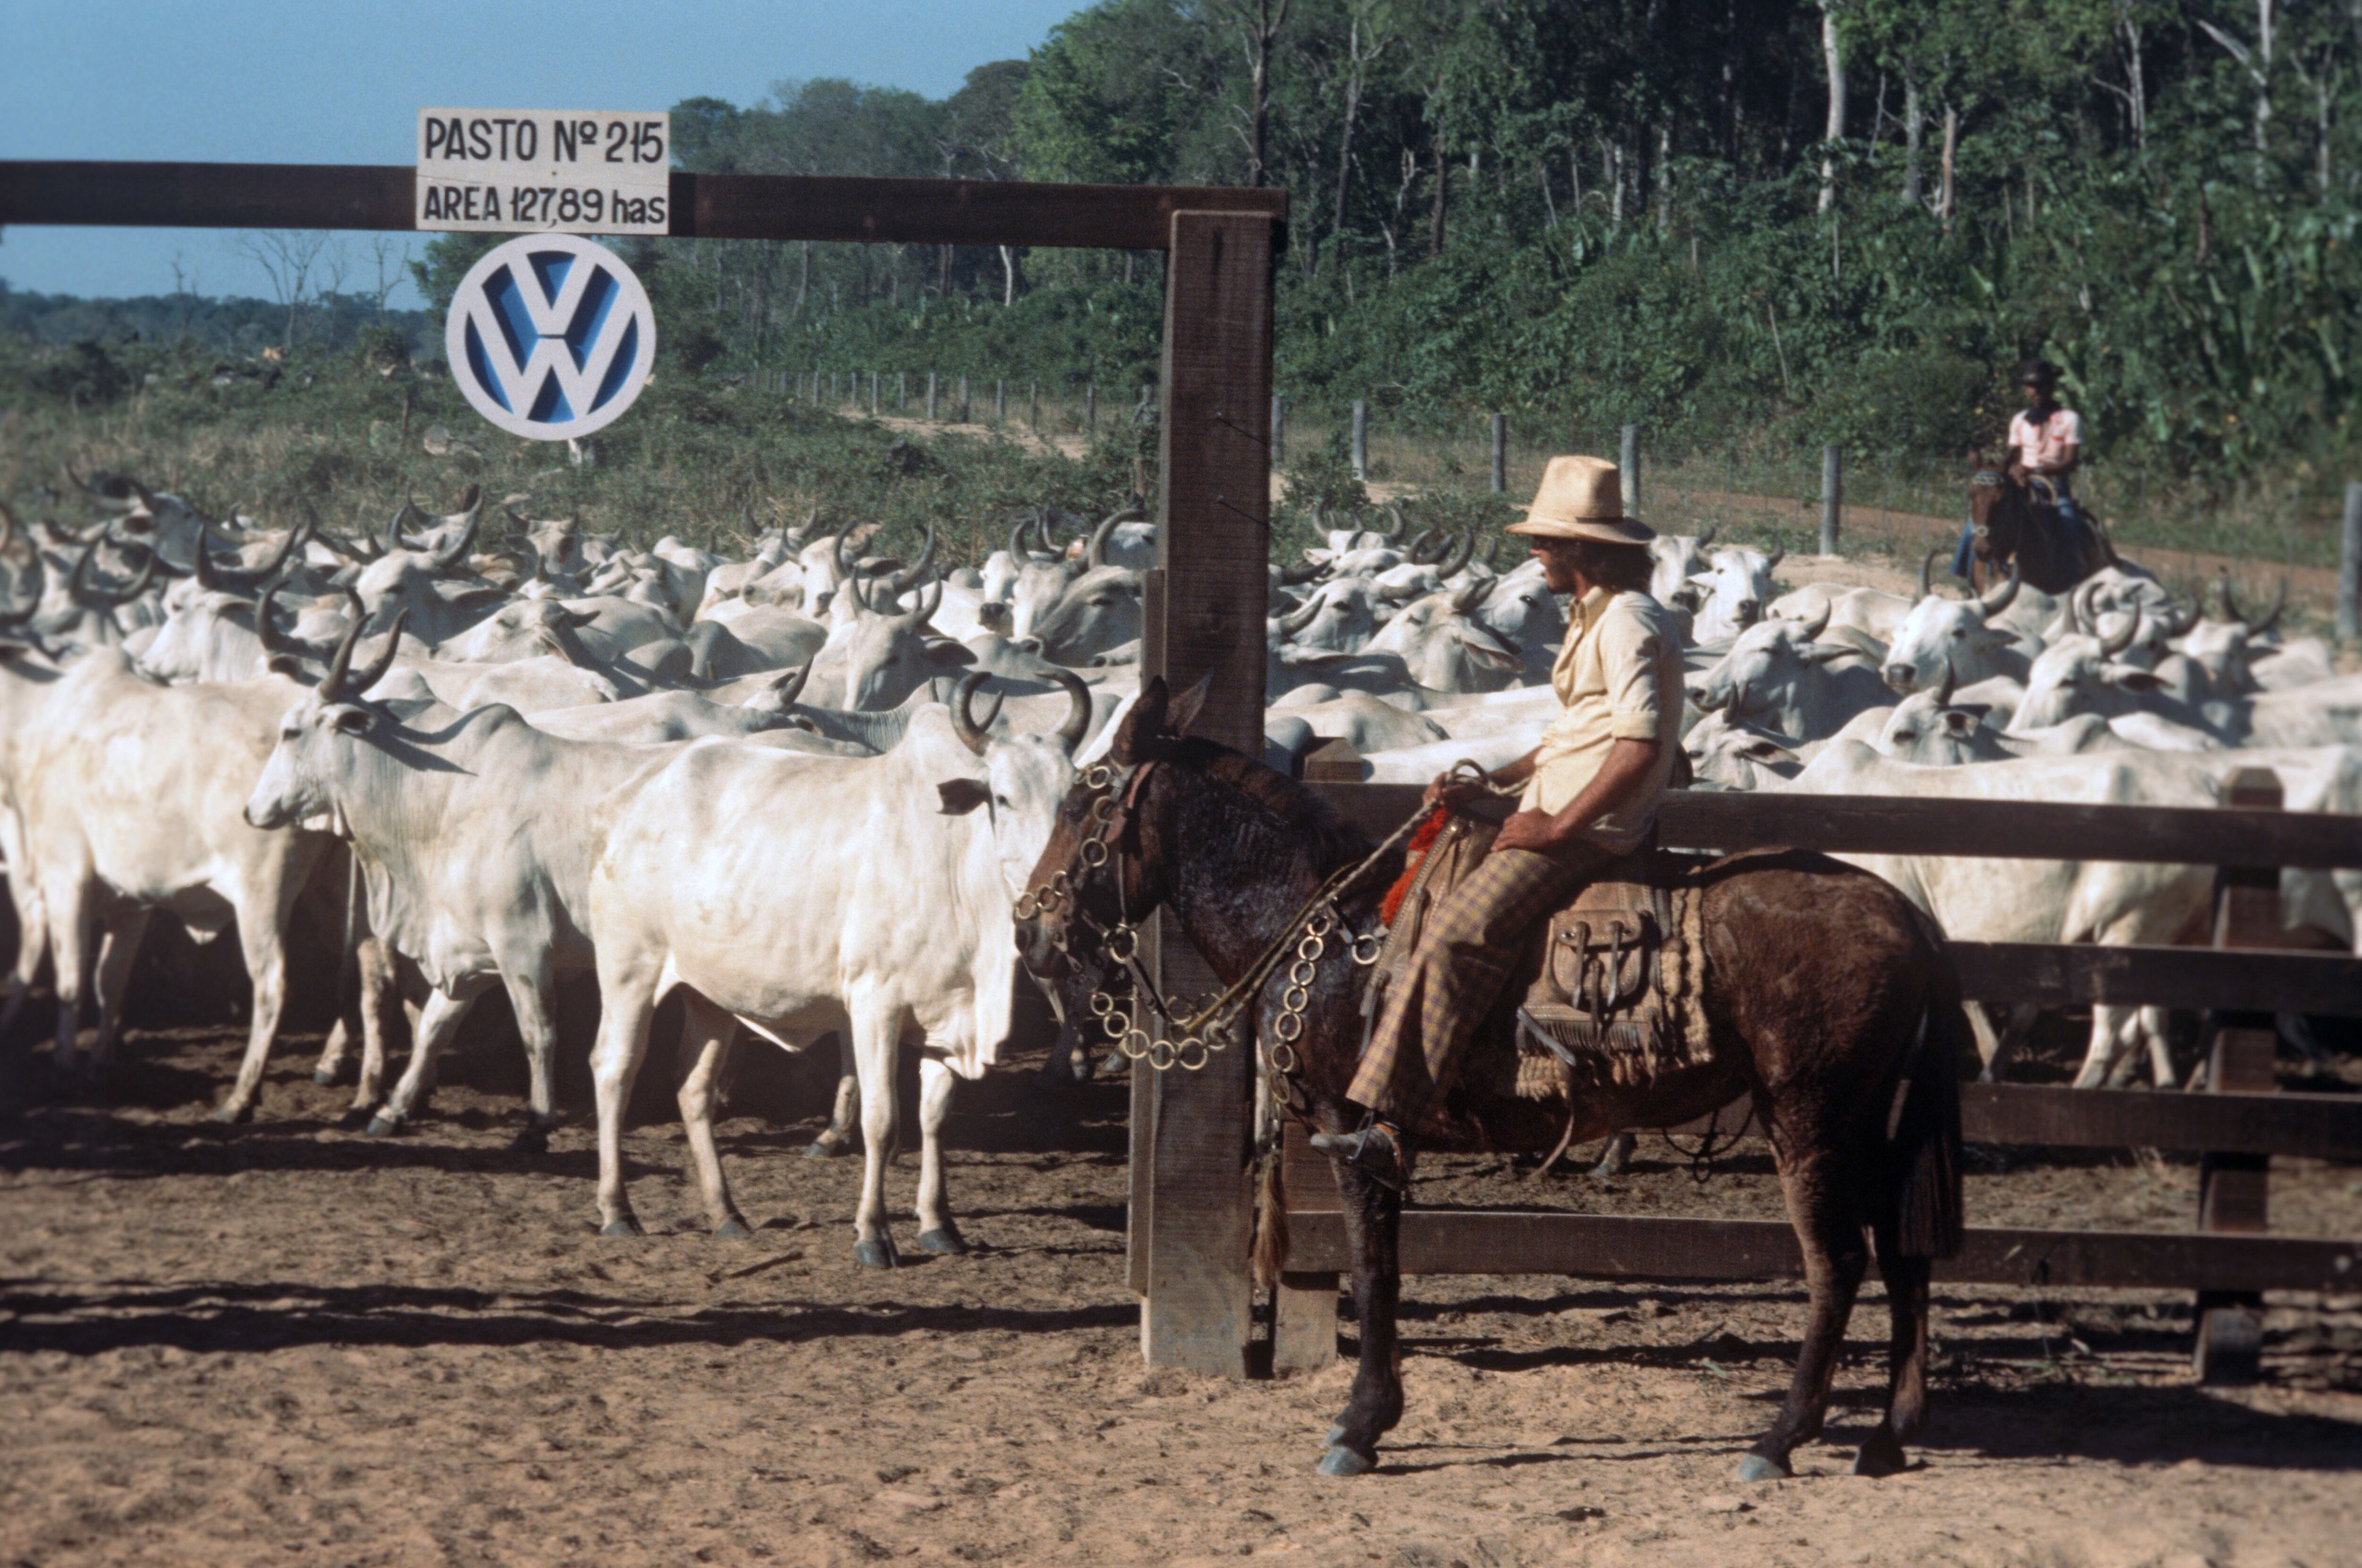 Un vaquero cuida del ganado en la finca de la multinacional que investiga el Ministerio Público por supuestos abusos en los años ochenta. Imagen tomada en 1978.